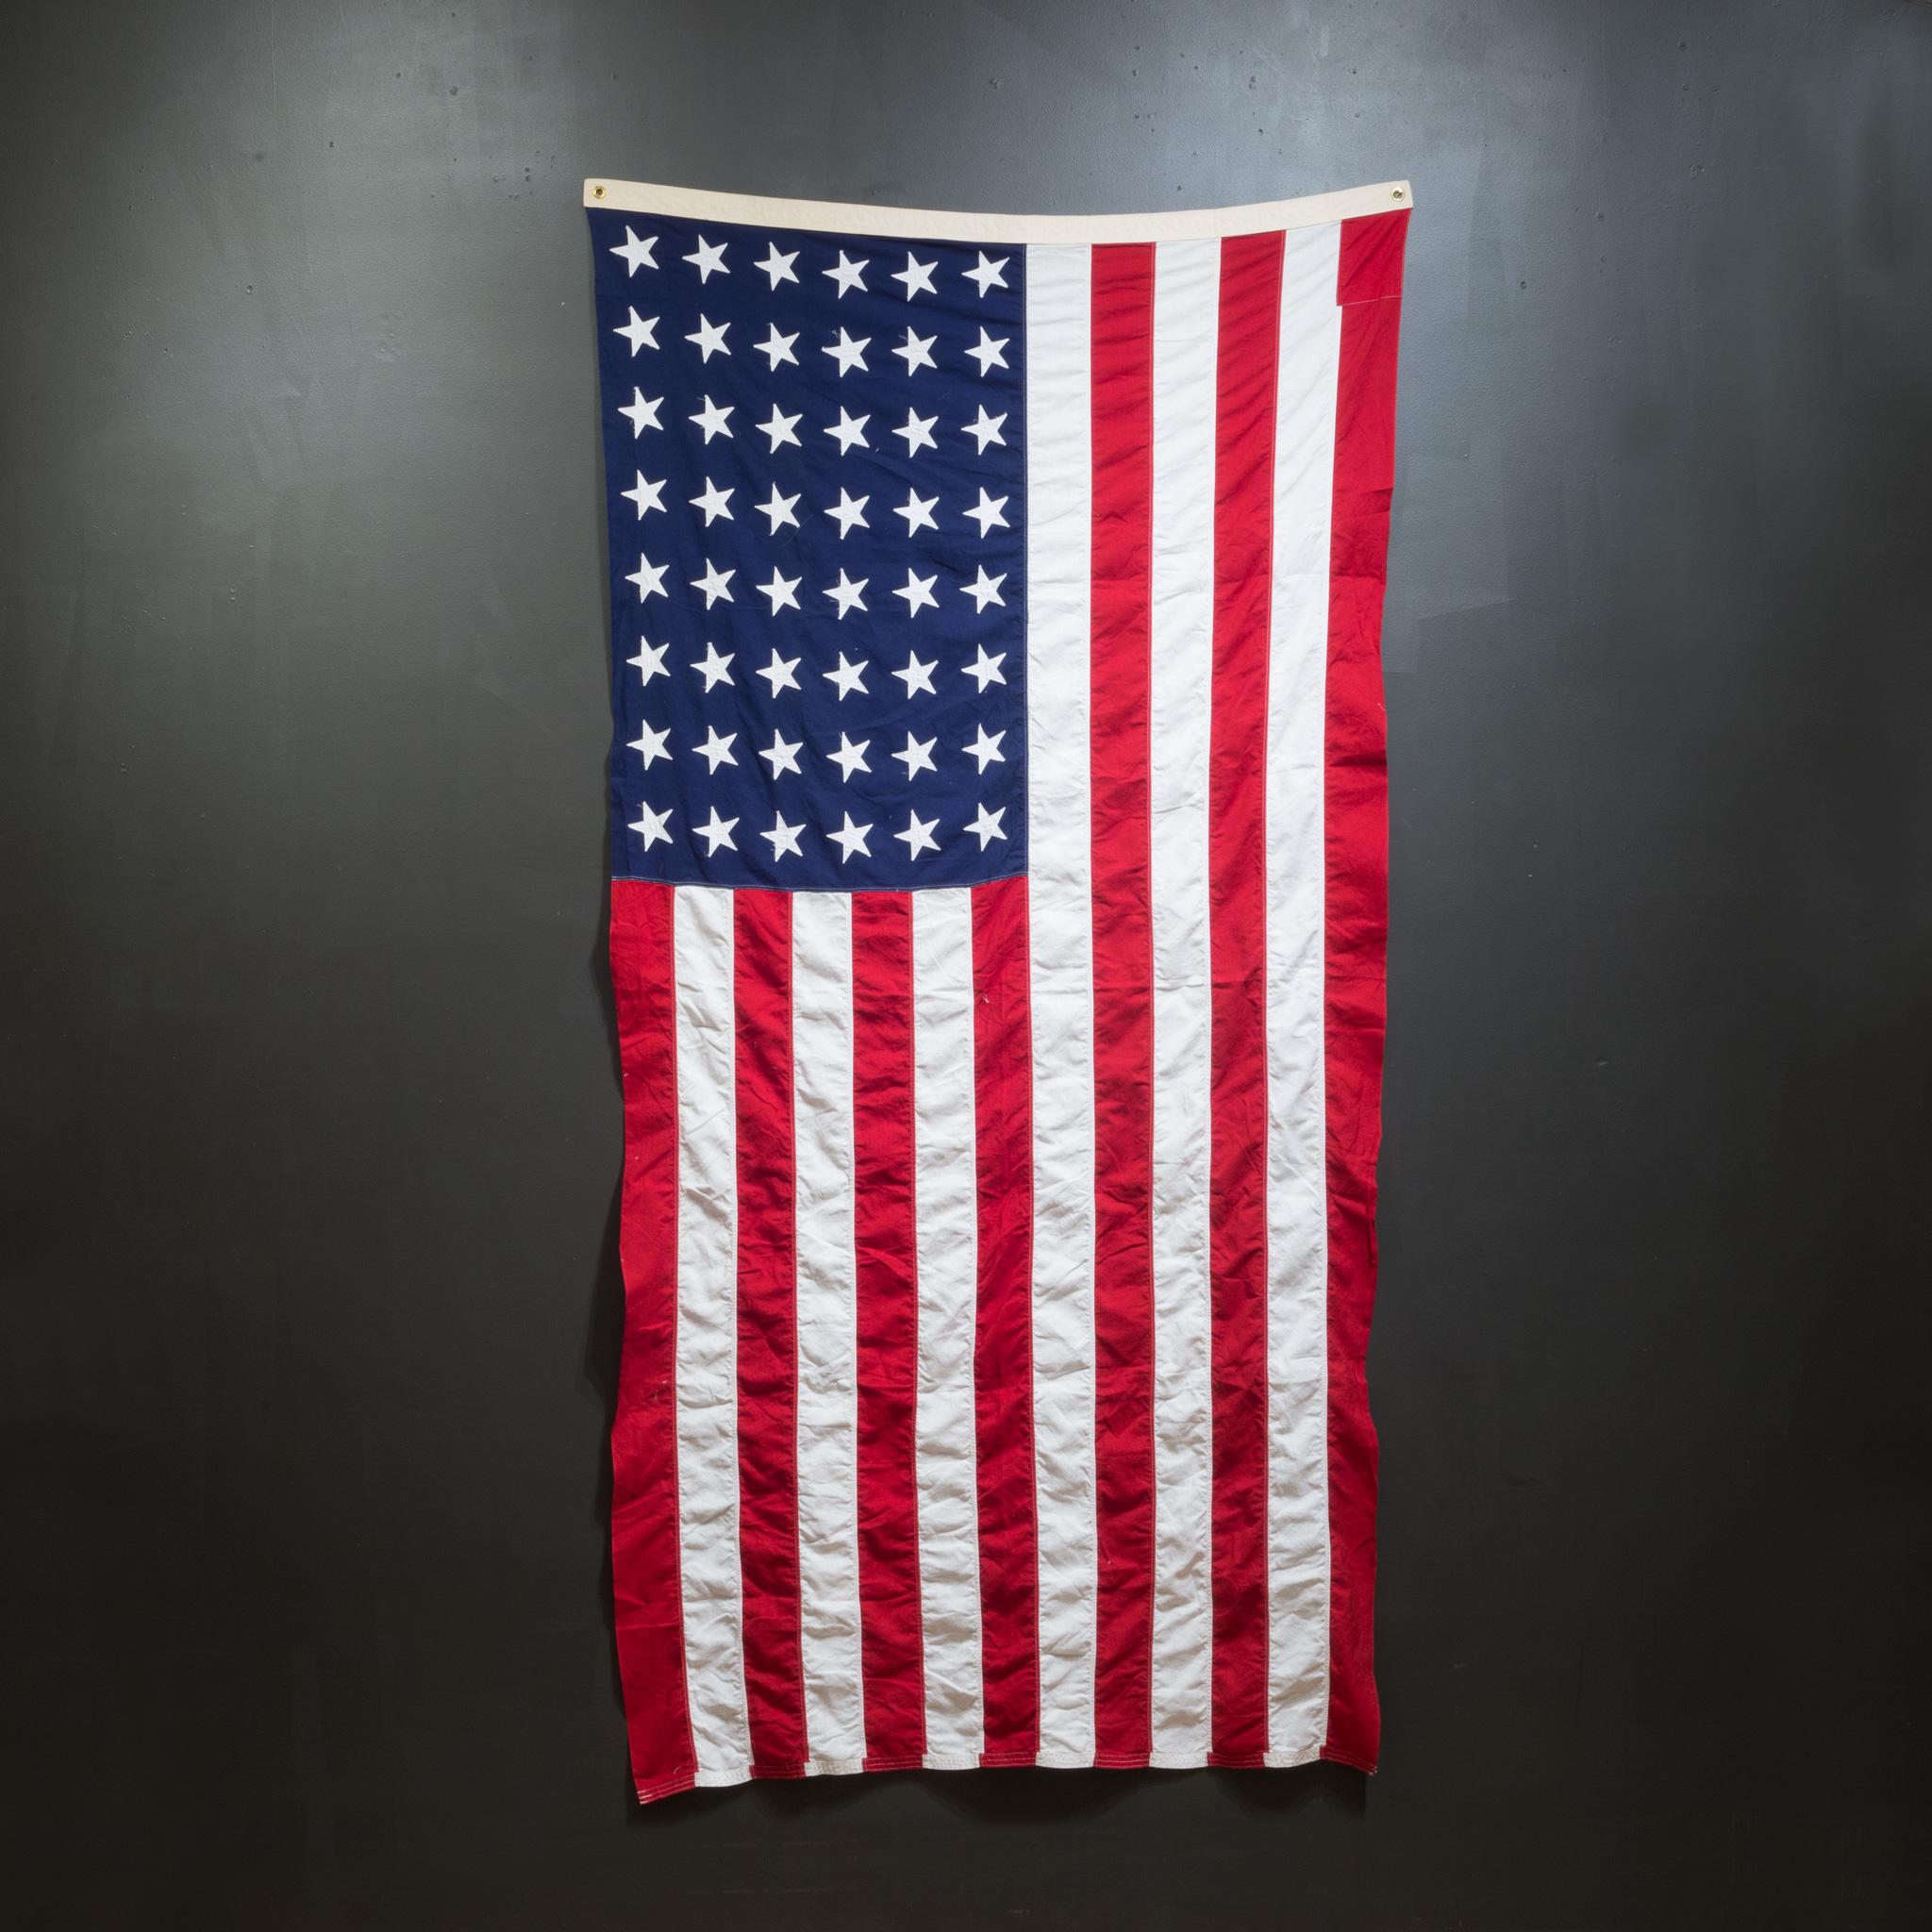 wie viel sterne hat die amerikanische flagge